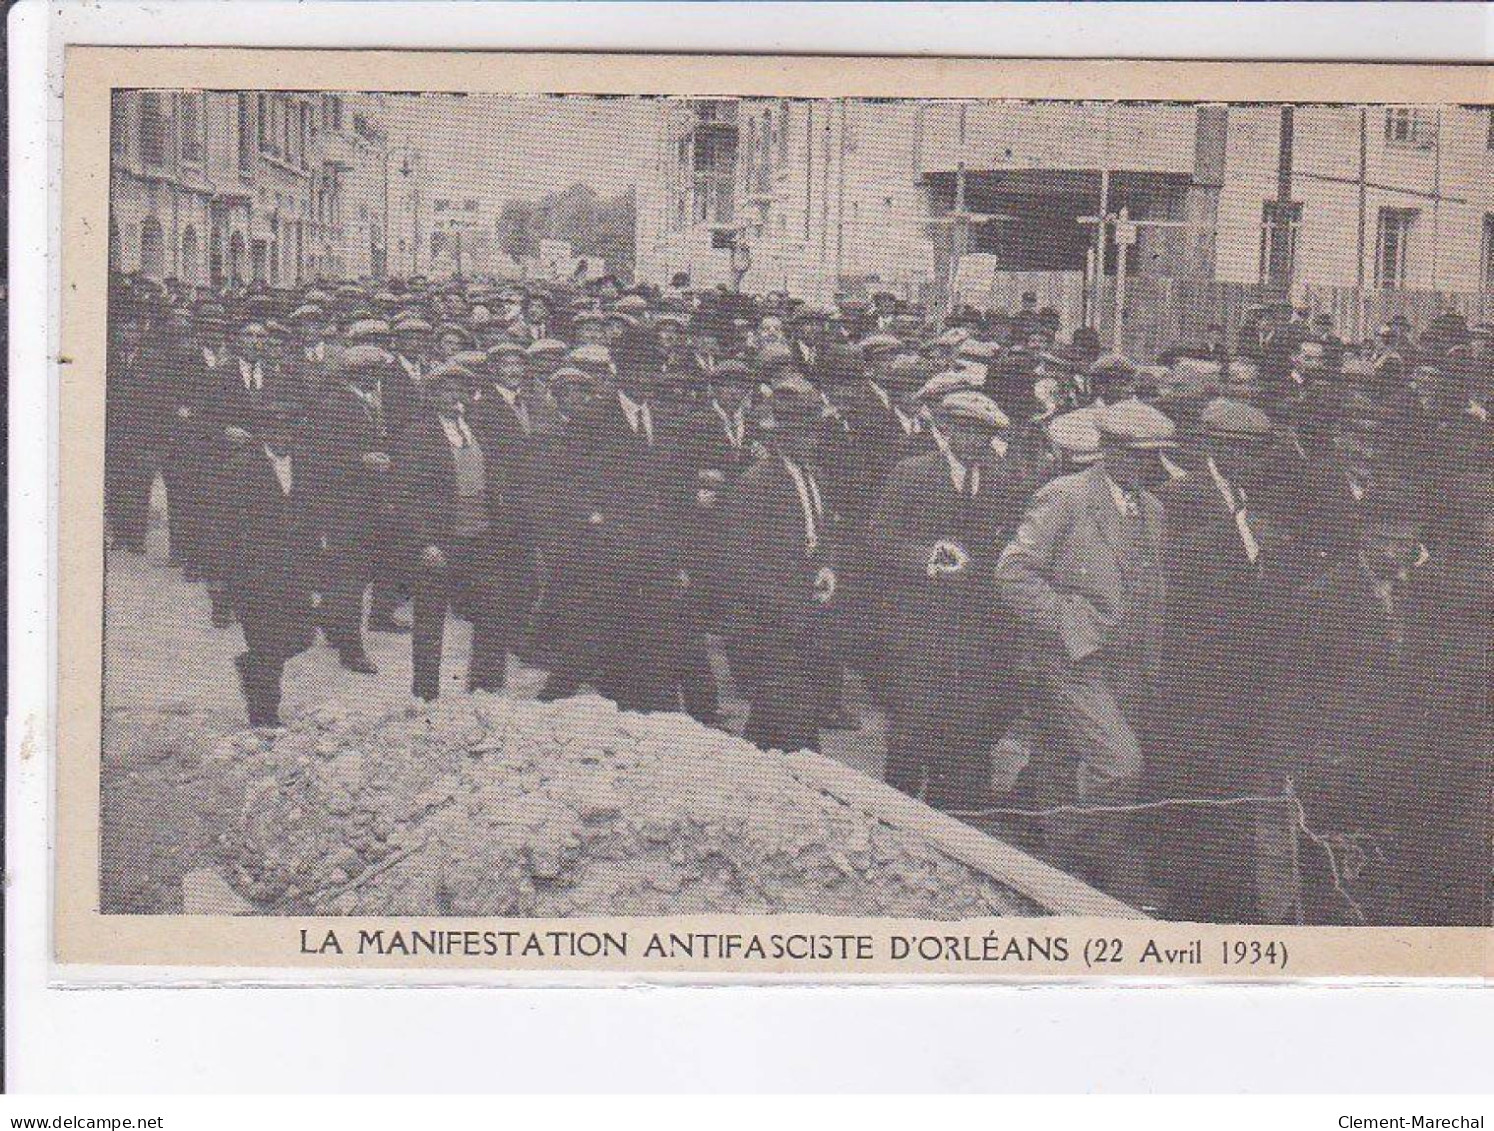 ORLEANS: lot de 11CPA la manifestation antifasciste d'orleans 22 avril 1934 - très bon état